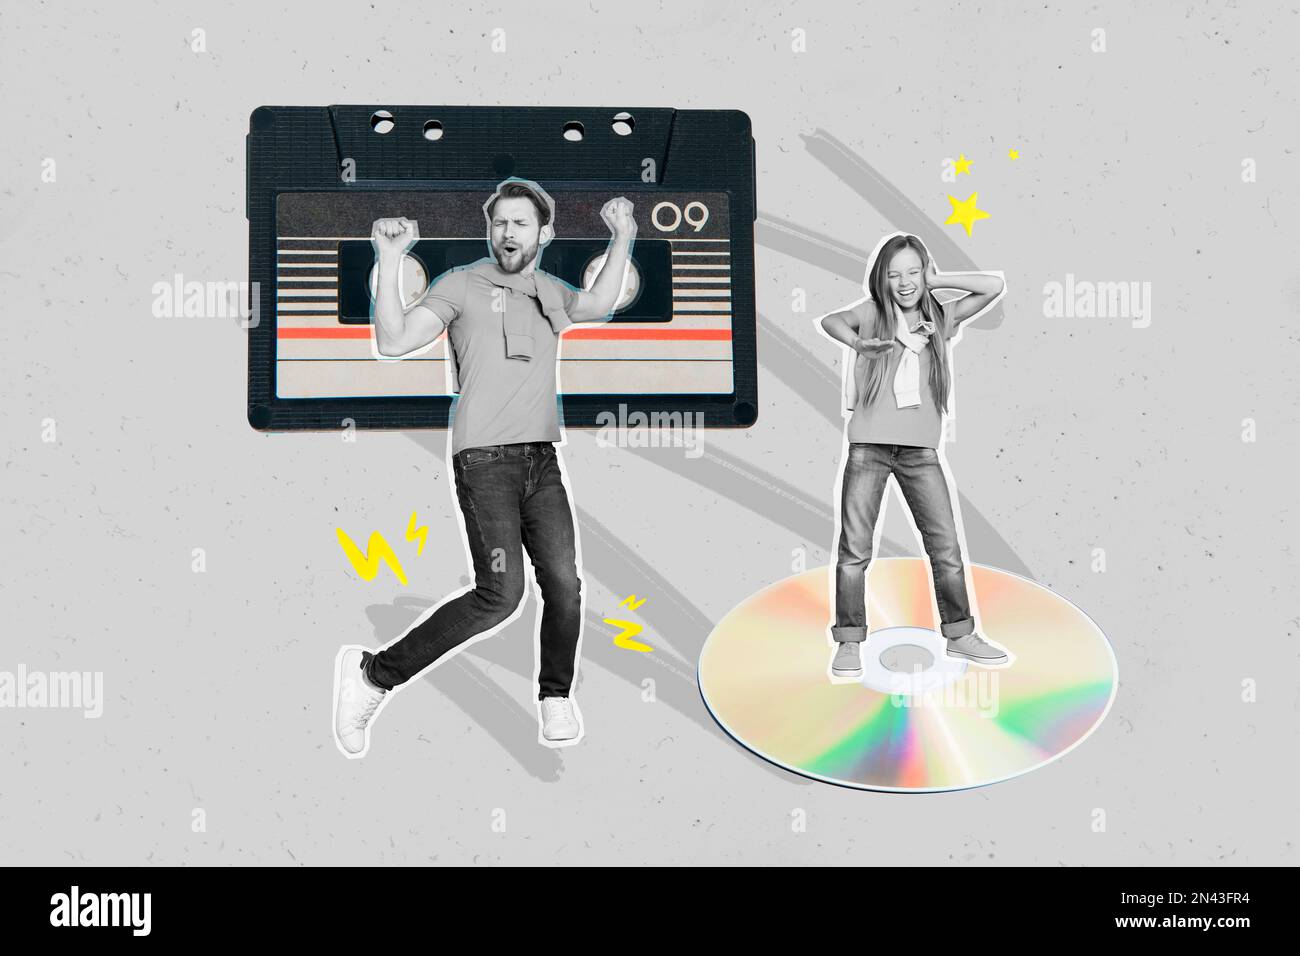 Art créatif photo collage de type insouciant dansant boogie woogie cassette record écouter musique adolescent cd fête isolé sur fond gris Banque D'Images